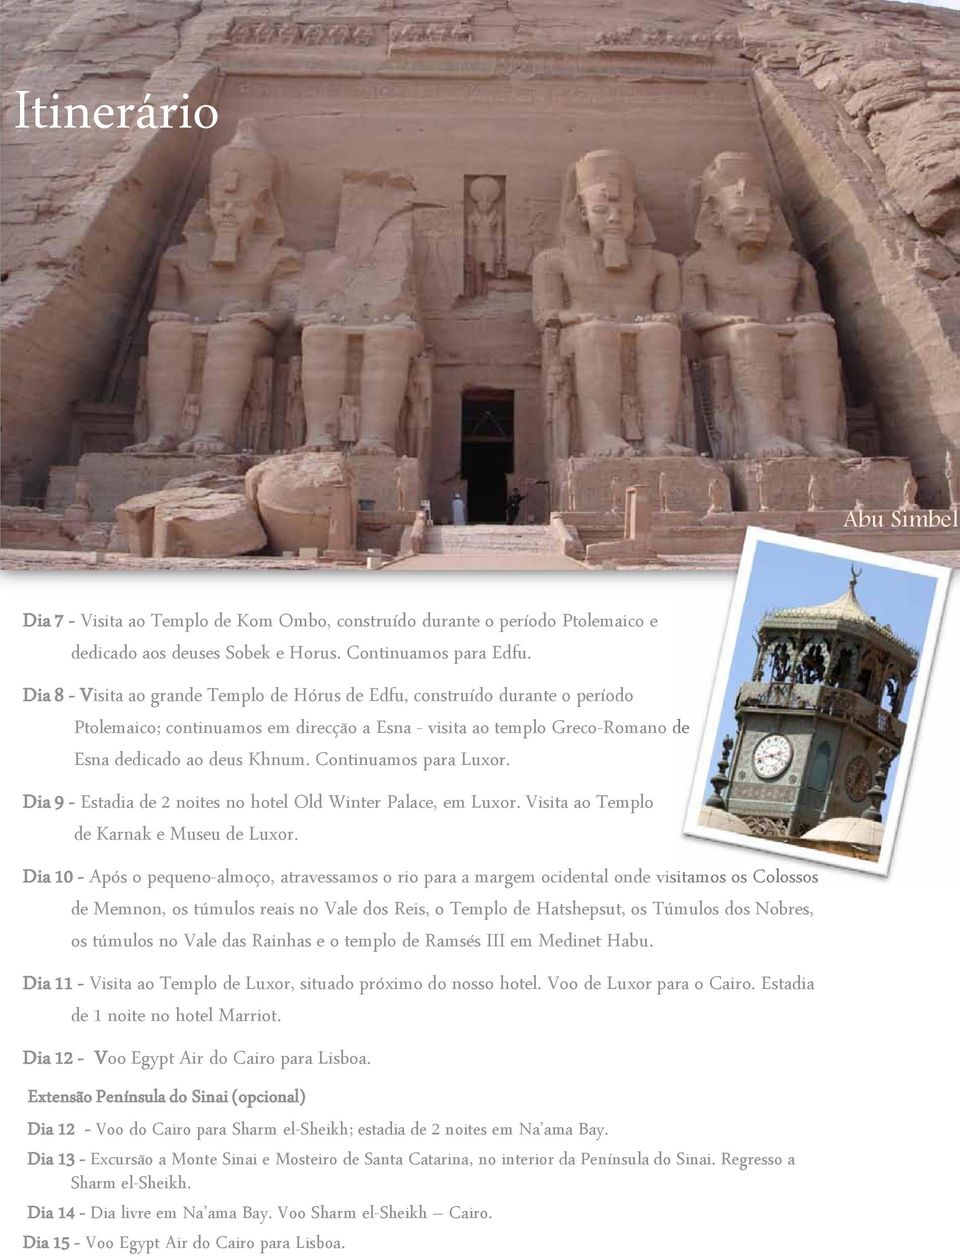 Continuamos para Luxor. Dia 9 - Estadia de 2 noites no hotel Old Winter Palace, em Luxor. Visita ao Templo de Karnak e Museu de Luxor.